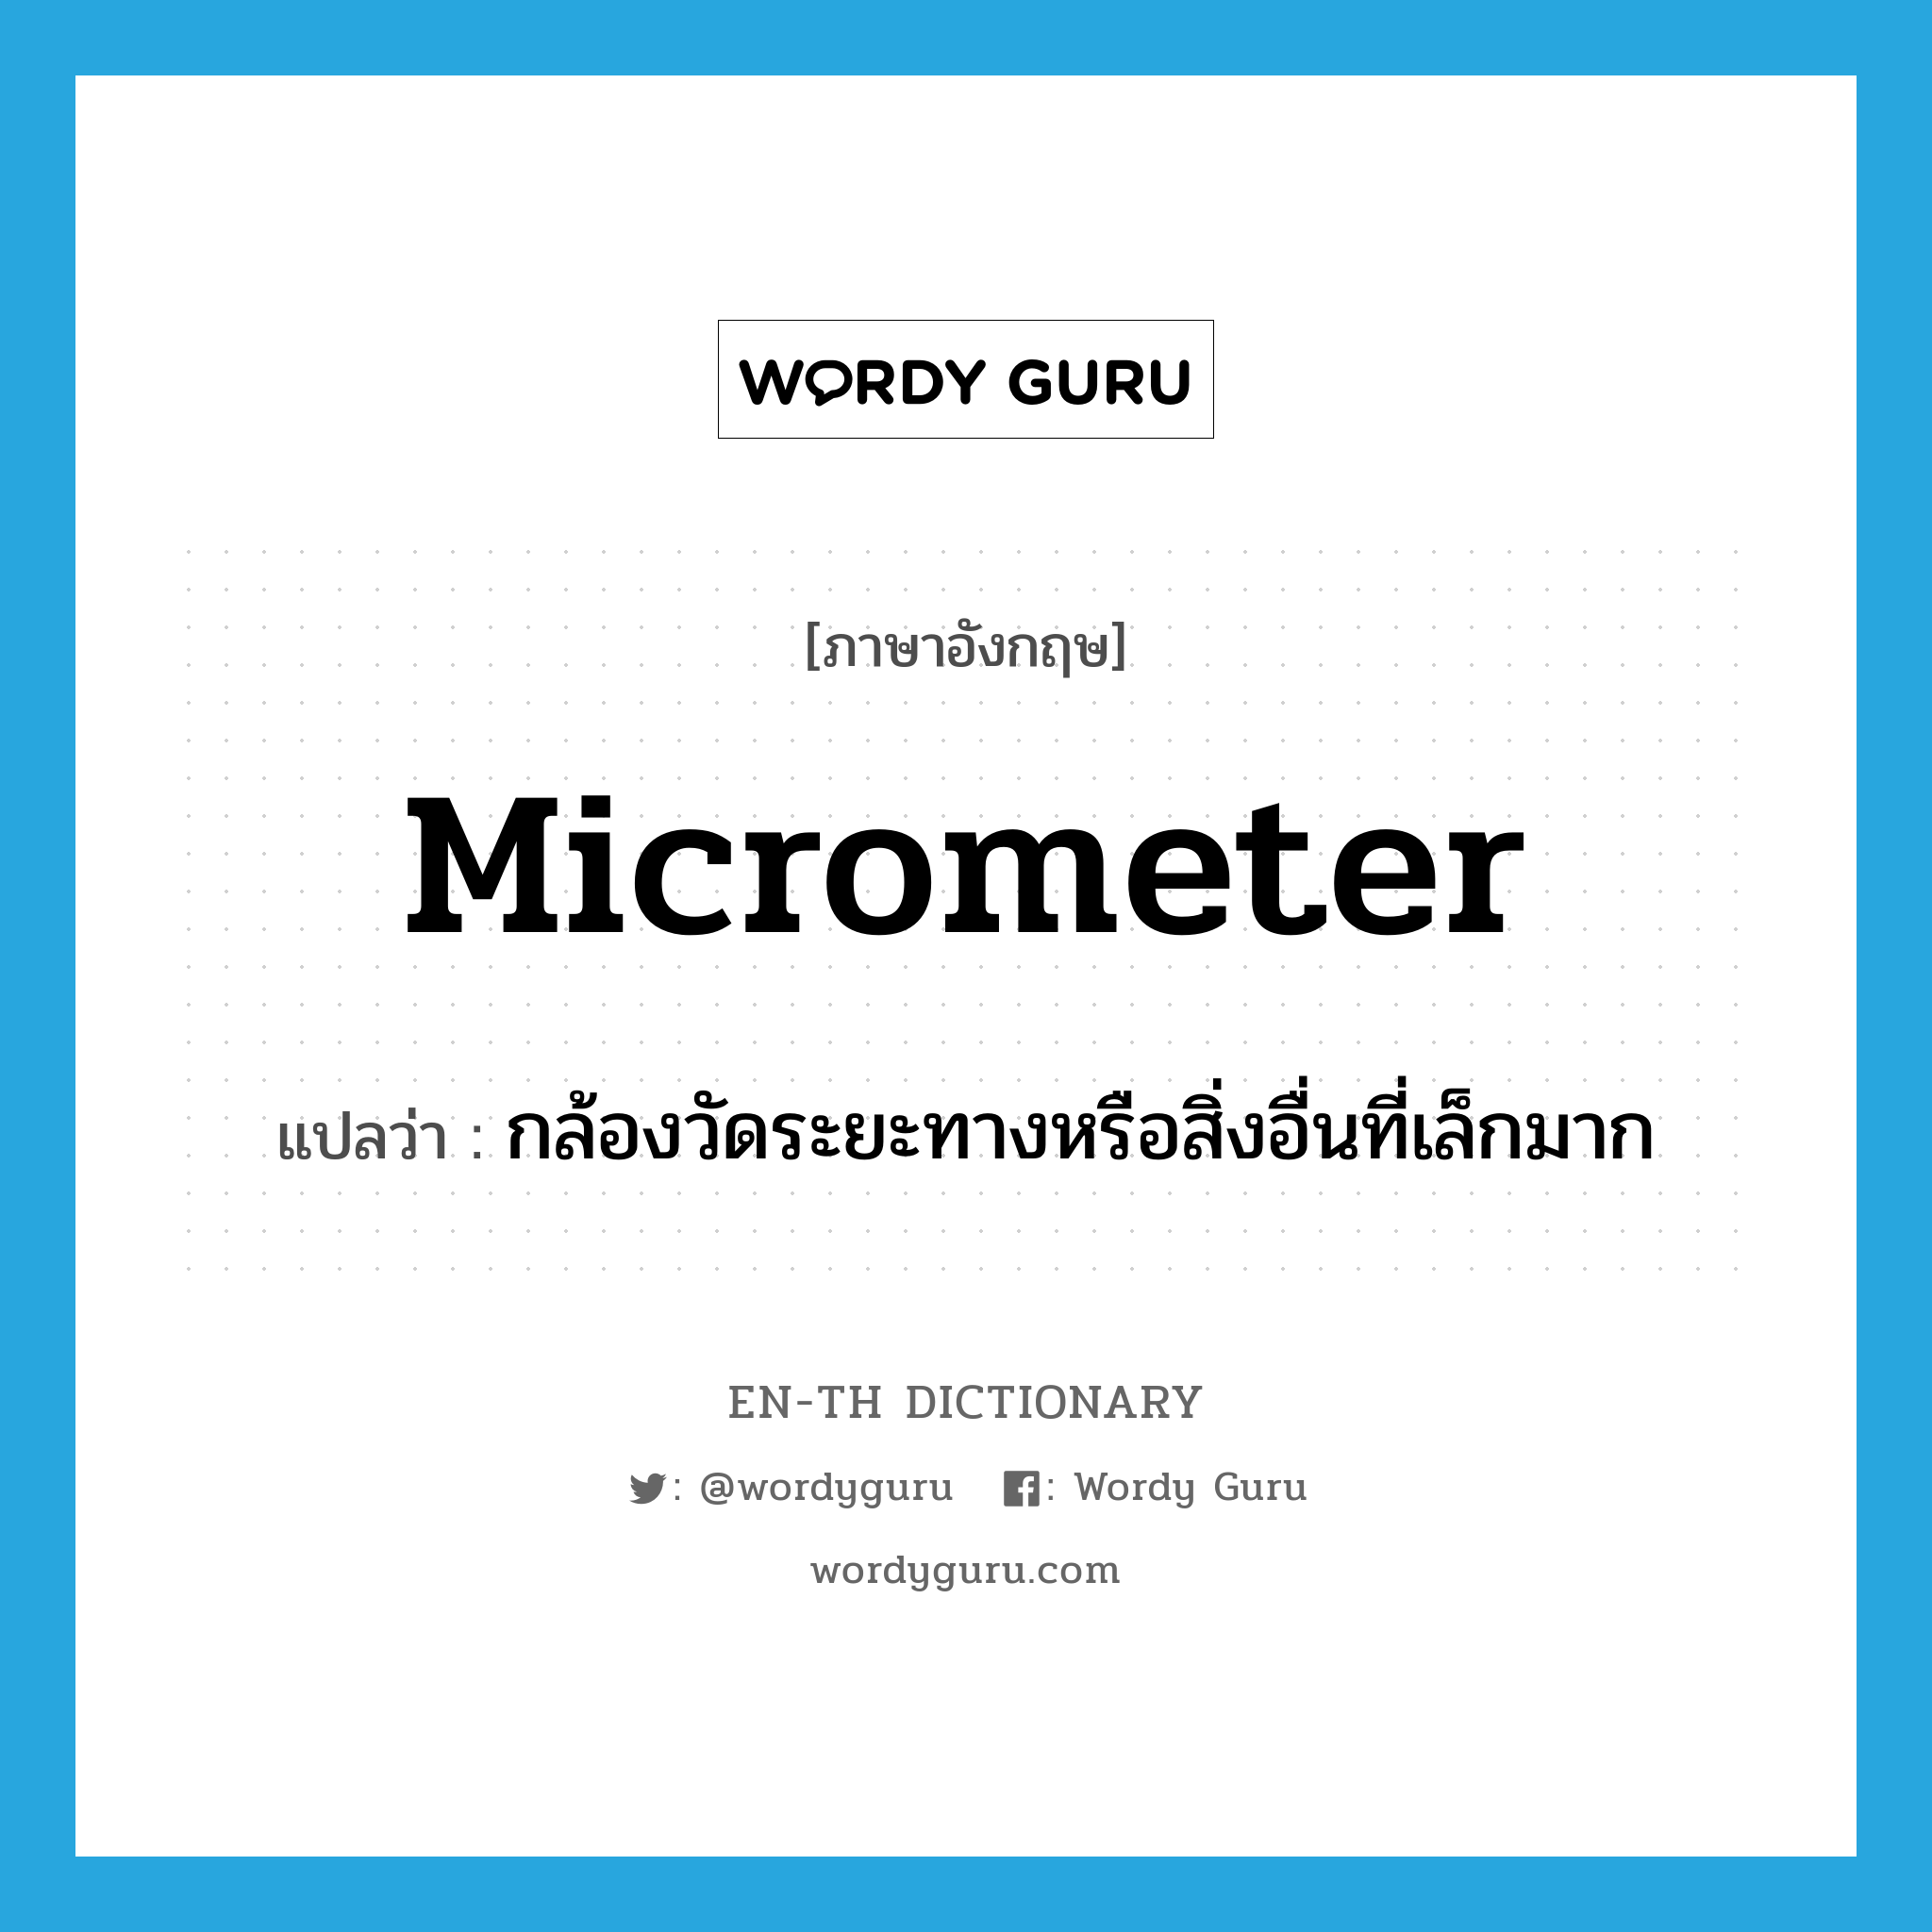 กล้องวัดระยะทางหรือสิ่งอื่นที่เล็กมาก ภาษาอังกฤษ?, คำศัพท์ภาษาอังกฤษ กล้องวัดระยะทางหรือสิ่งอื่นที่เล็กมาก แปลว่า micrometer ประเภท N หมวด N